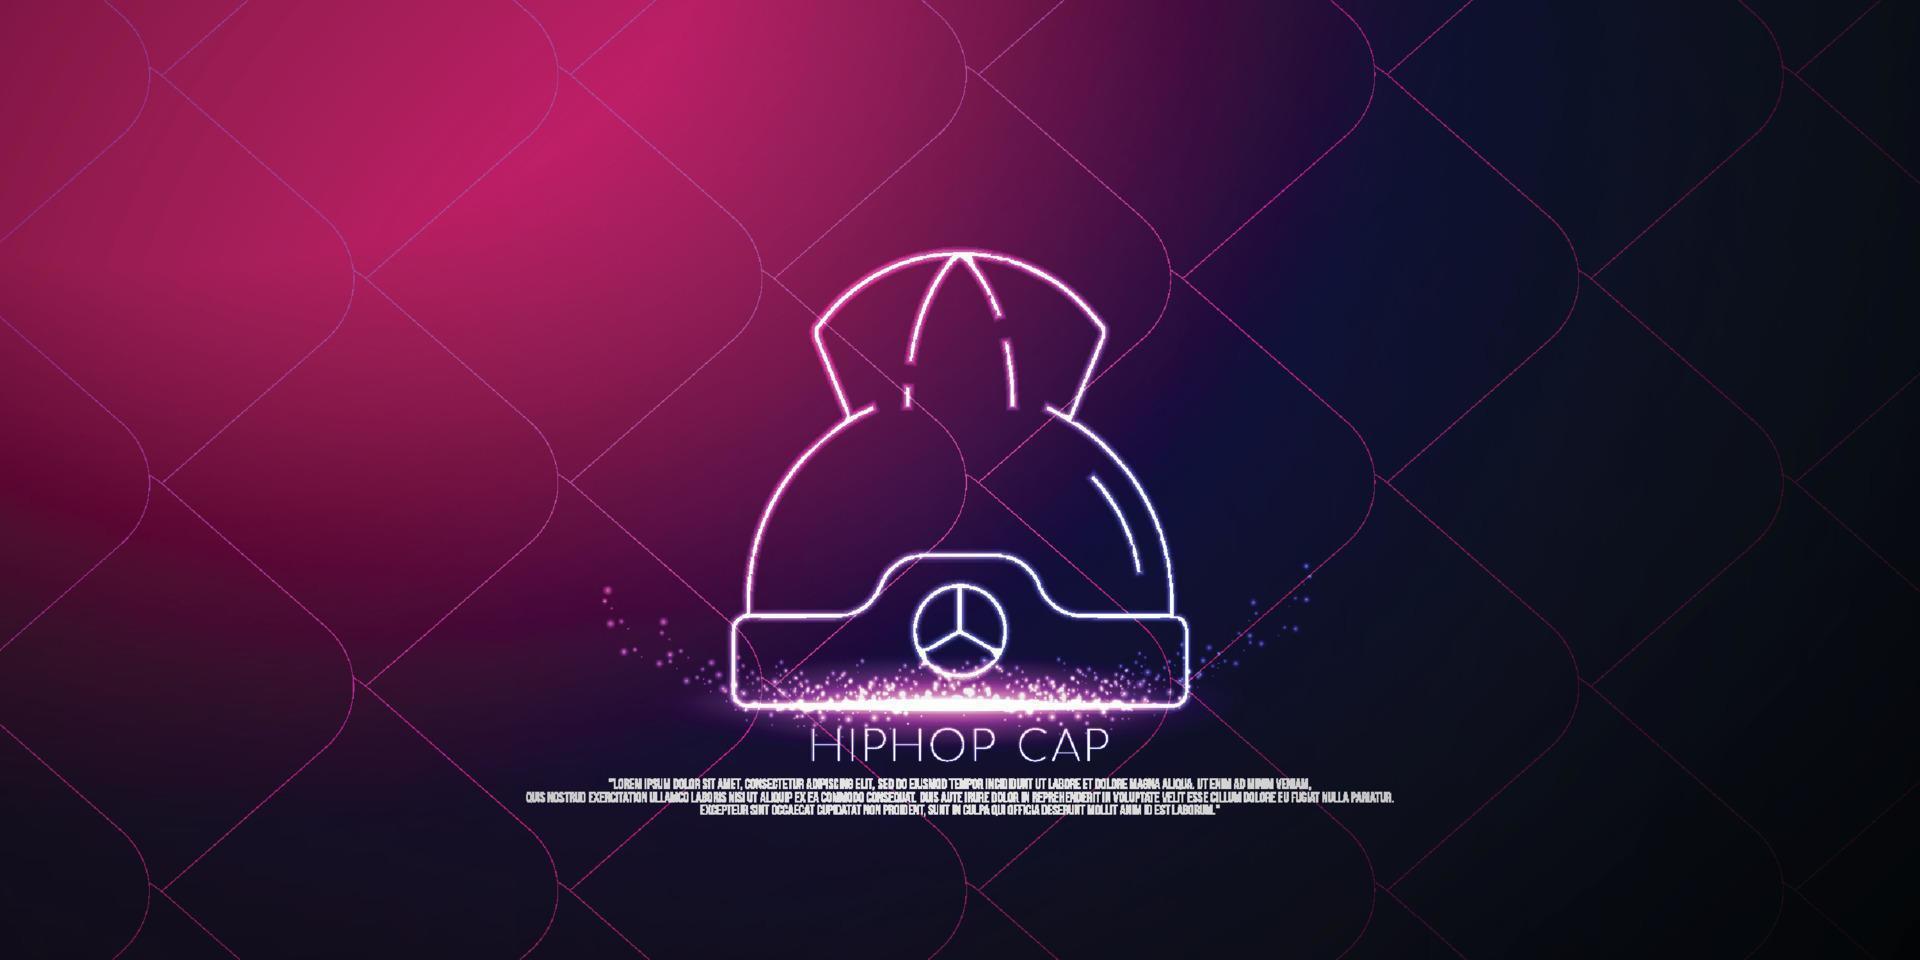 concetto digitale di berretto hip hop, design in stile particellare. struttura di connessione leggera wireframe, banner, logo, etichetta e poster, illustrazione vettoriale